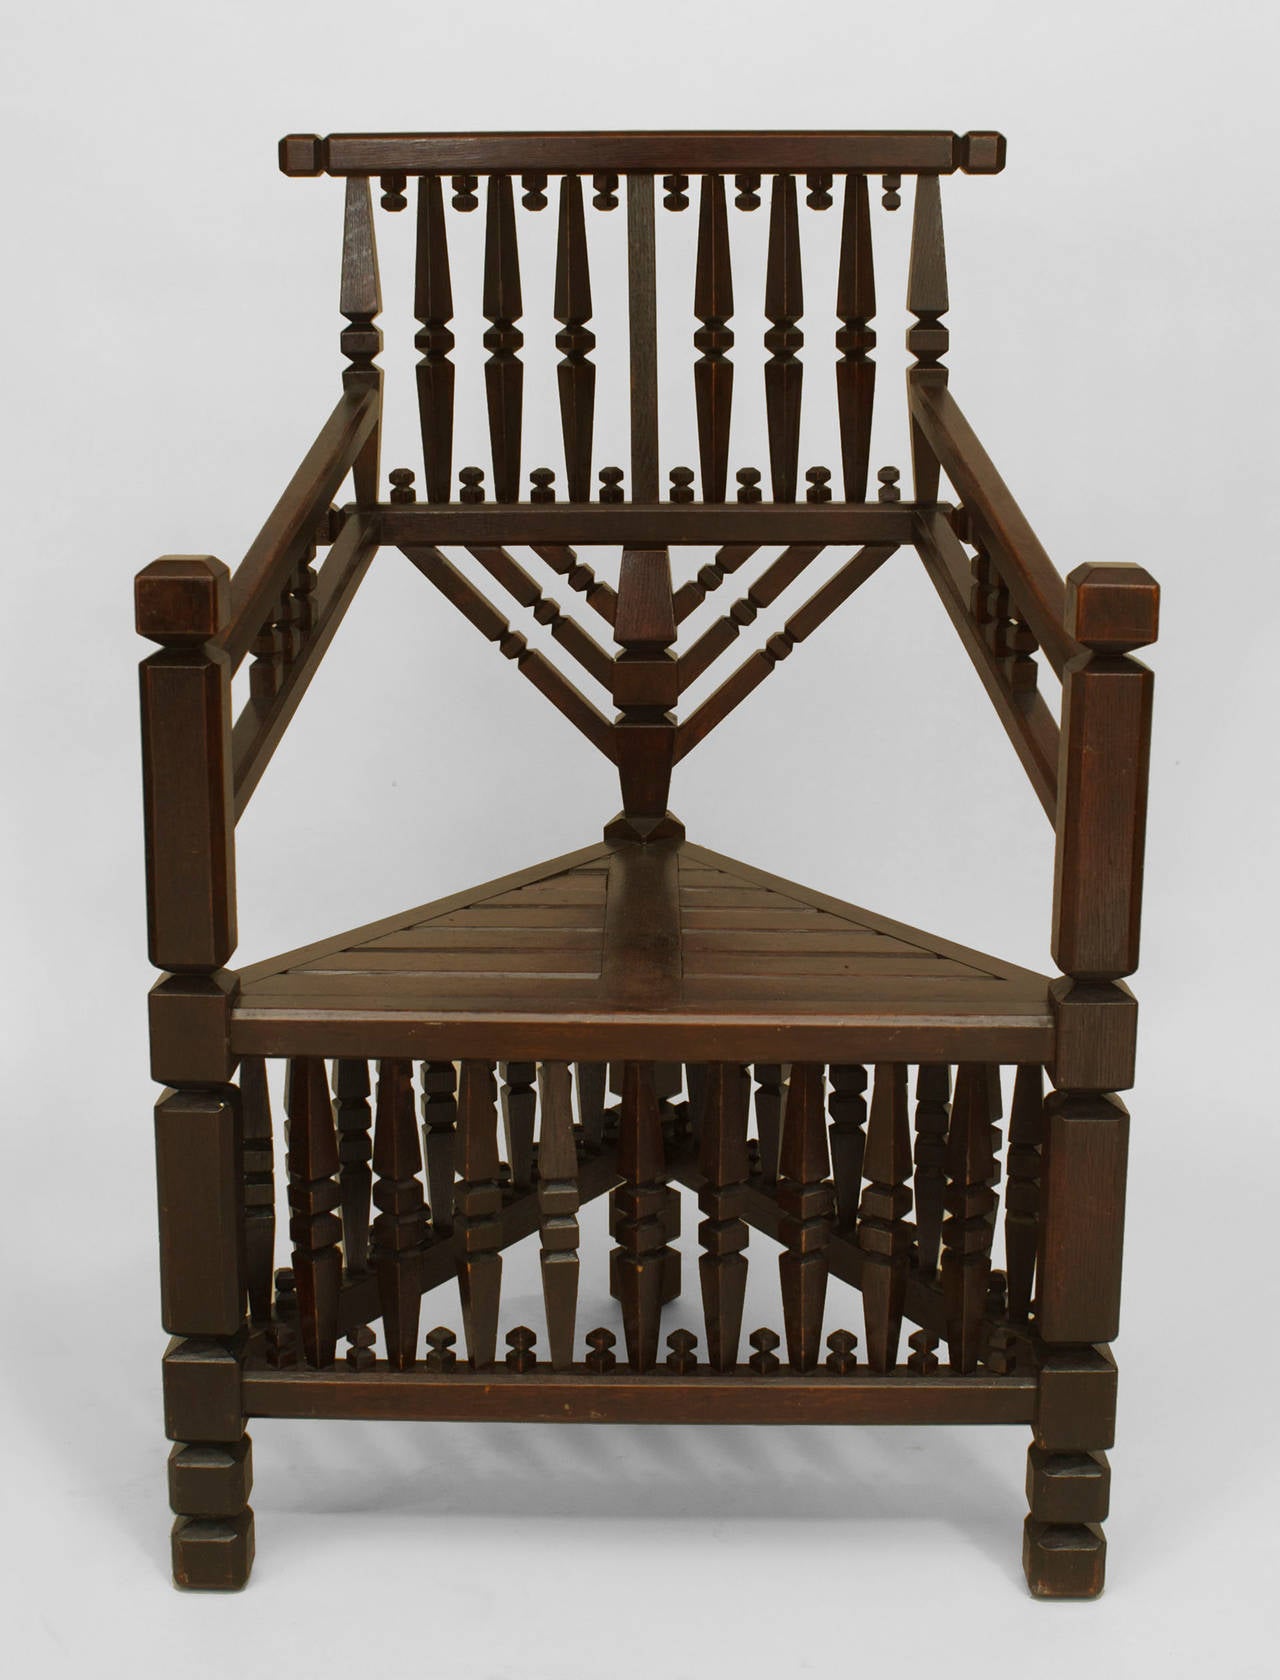 Großer, dunkel gebeizter Sessel aus Eichenholz mit dreieckiger Form und geometrischem Spindel- und Endstückdesign auf Rückenlehne und Bahre.
